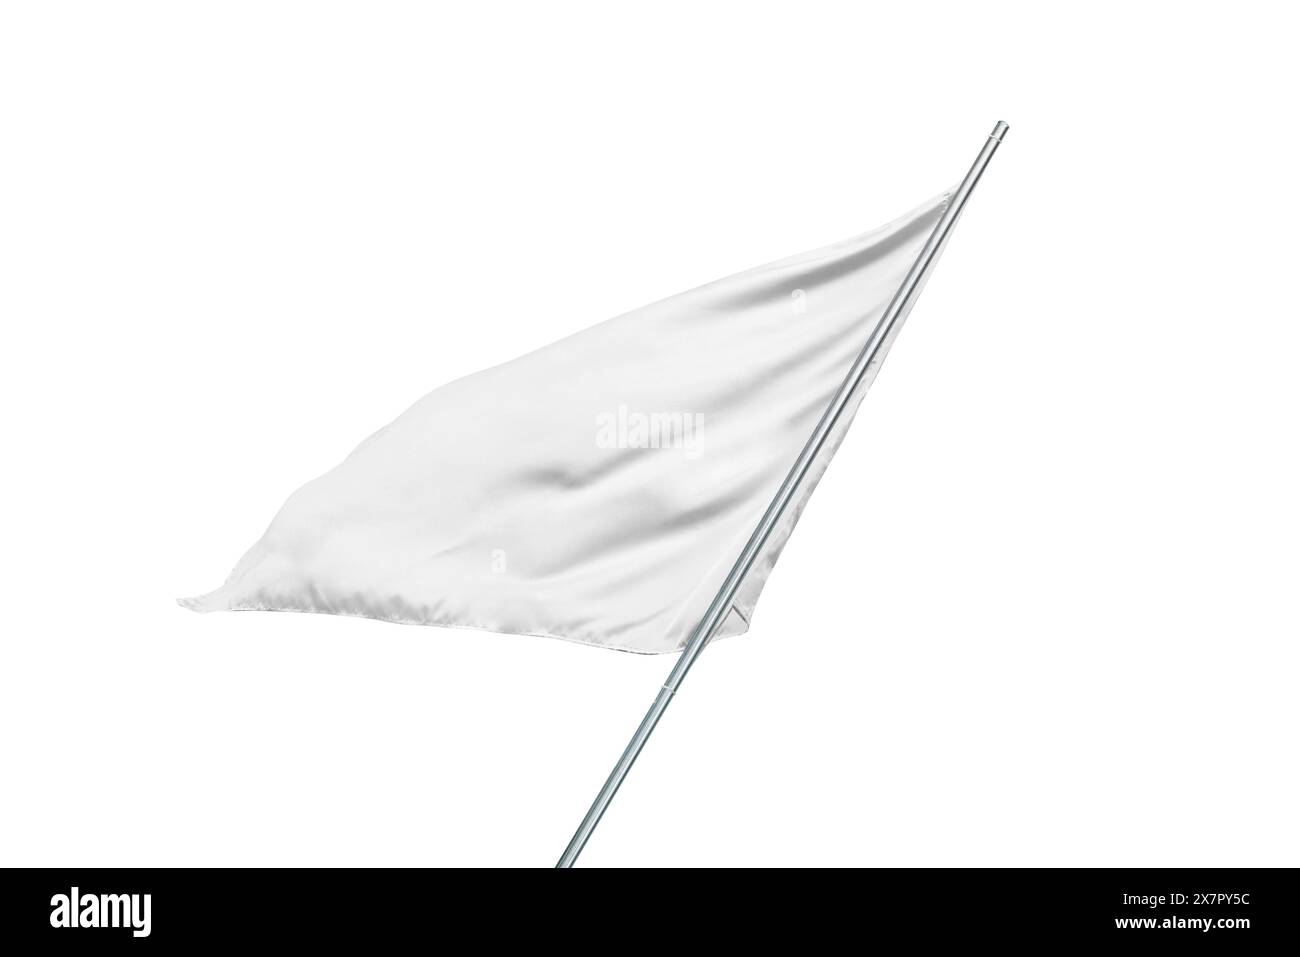 Mockup bandiera bianca che fluttua nel vento, perfetto per la bandiera nazionale o il design, pubblicando con una texture semplice e pulita Foto Stock